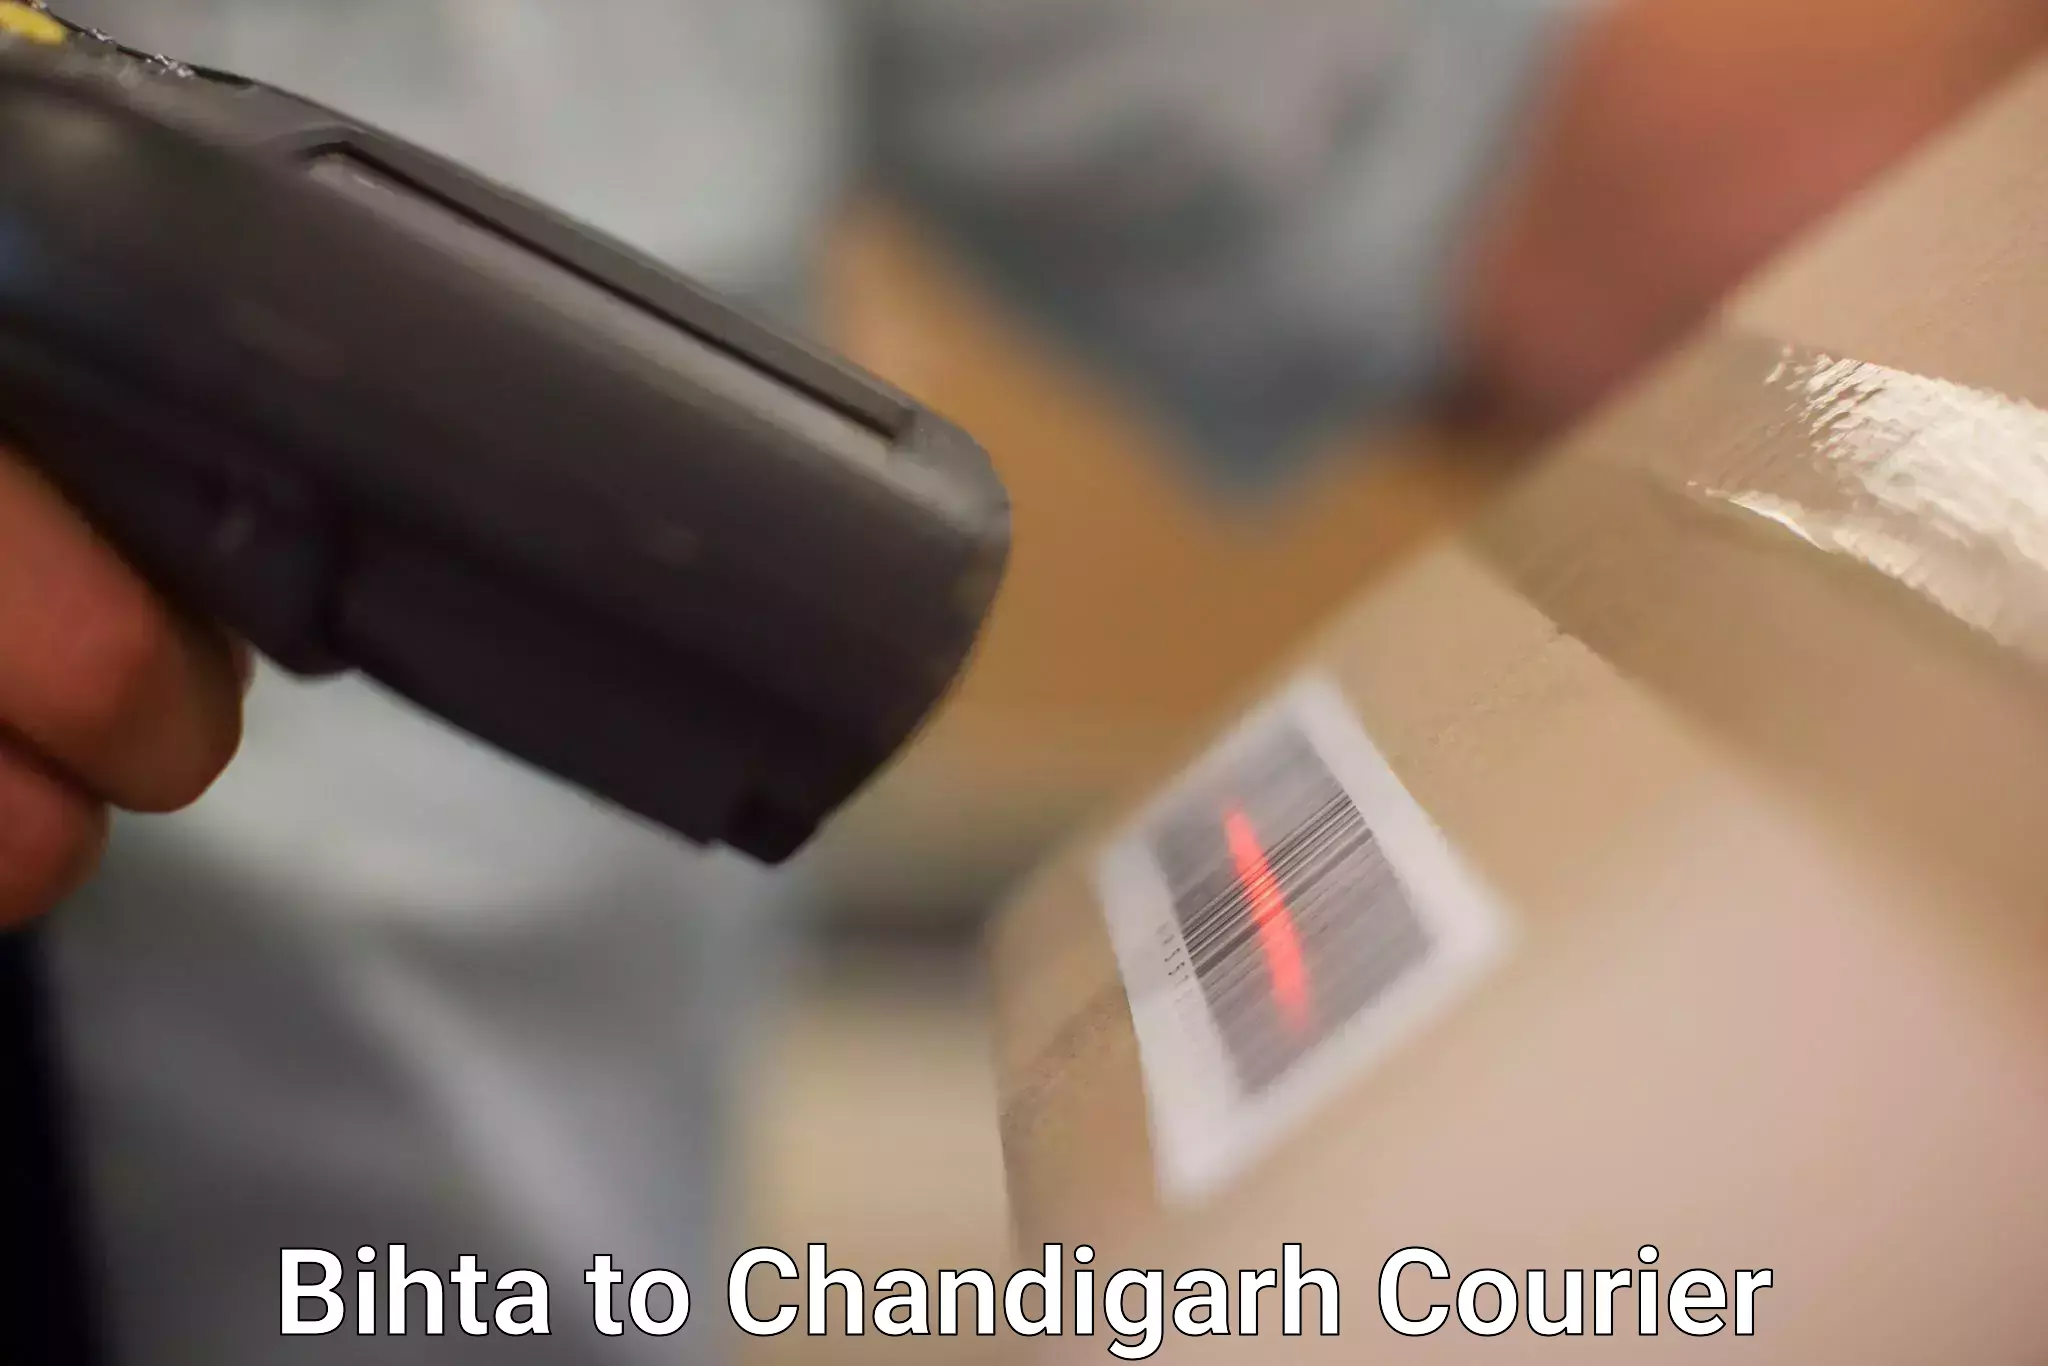 Premium courier services in Bihta to Chandigarh